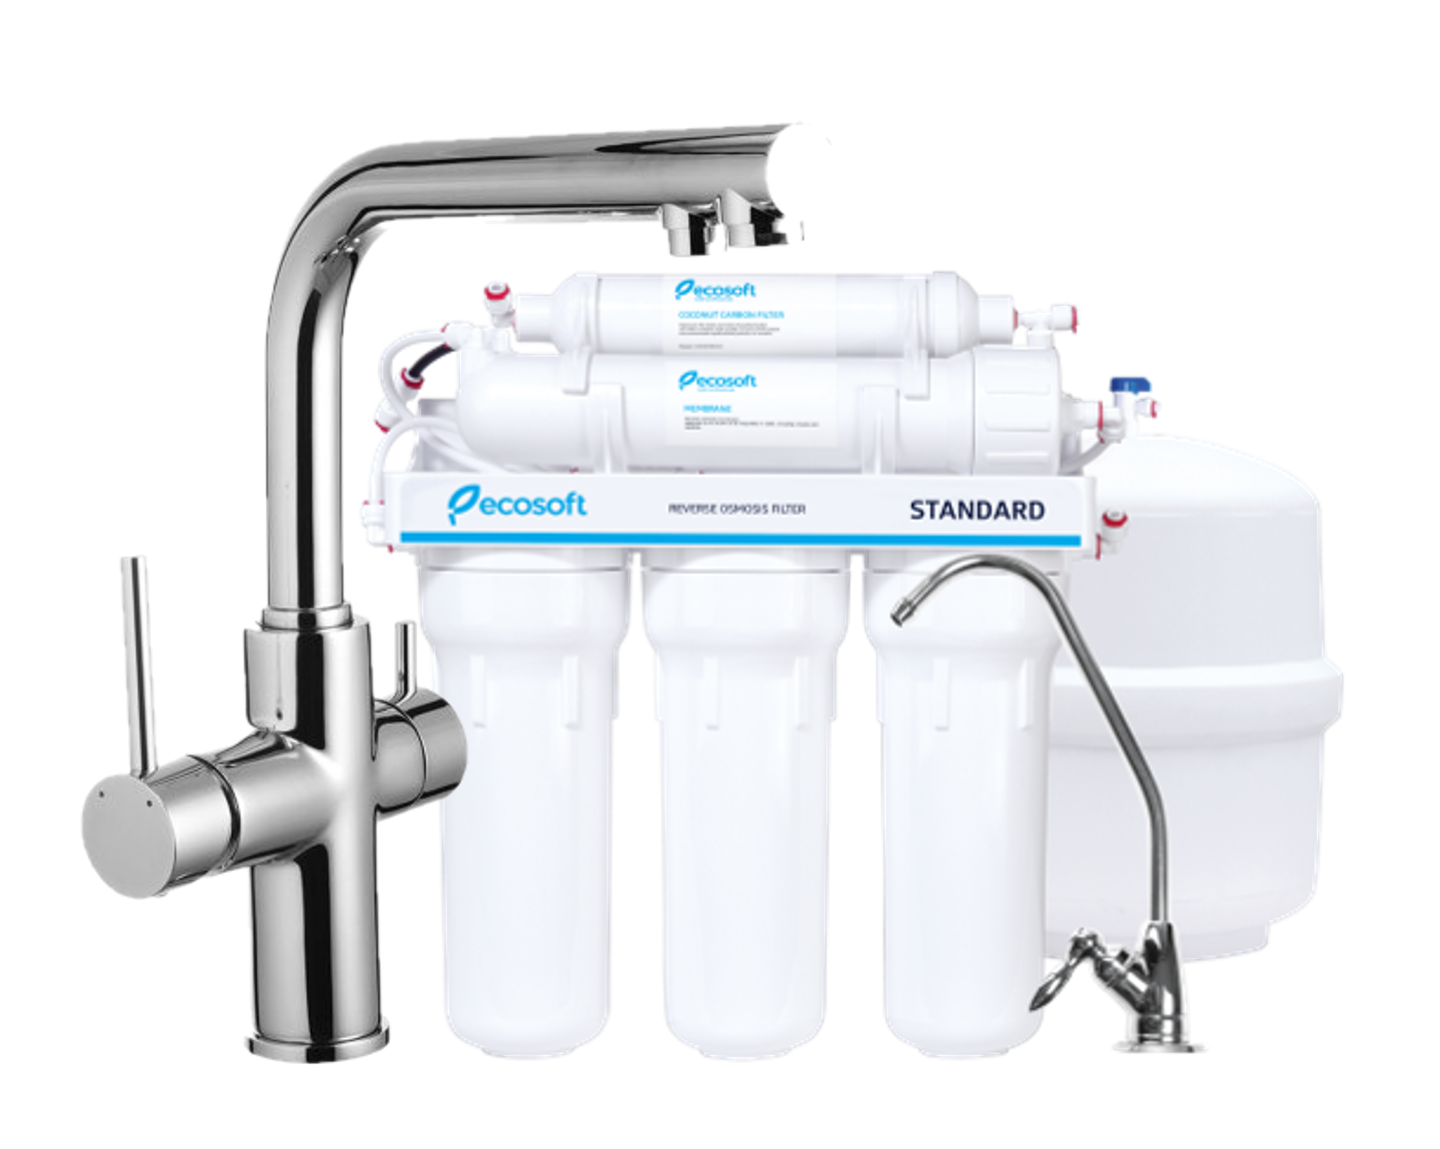 Инструкция смеситель с фильтром воды Imprese Daicy 55009-F + Ecosoft Standart MO550ECOSTD